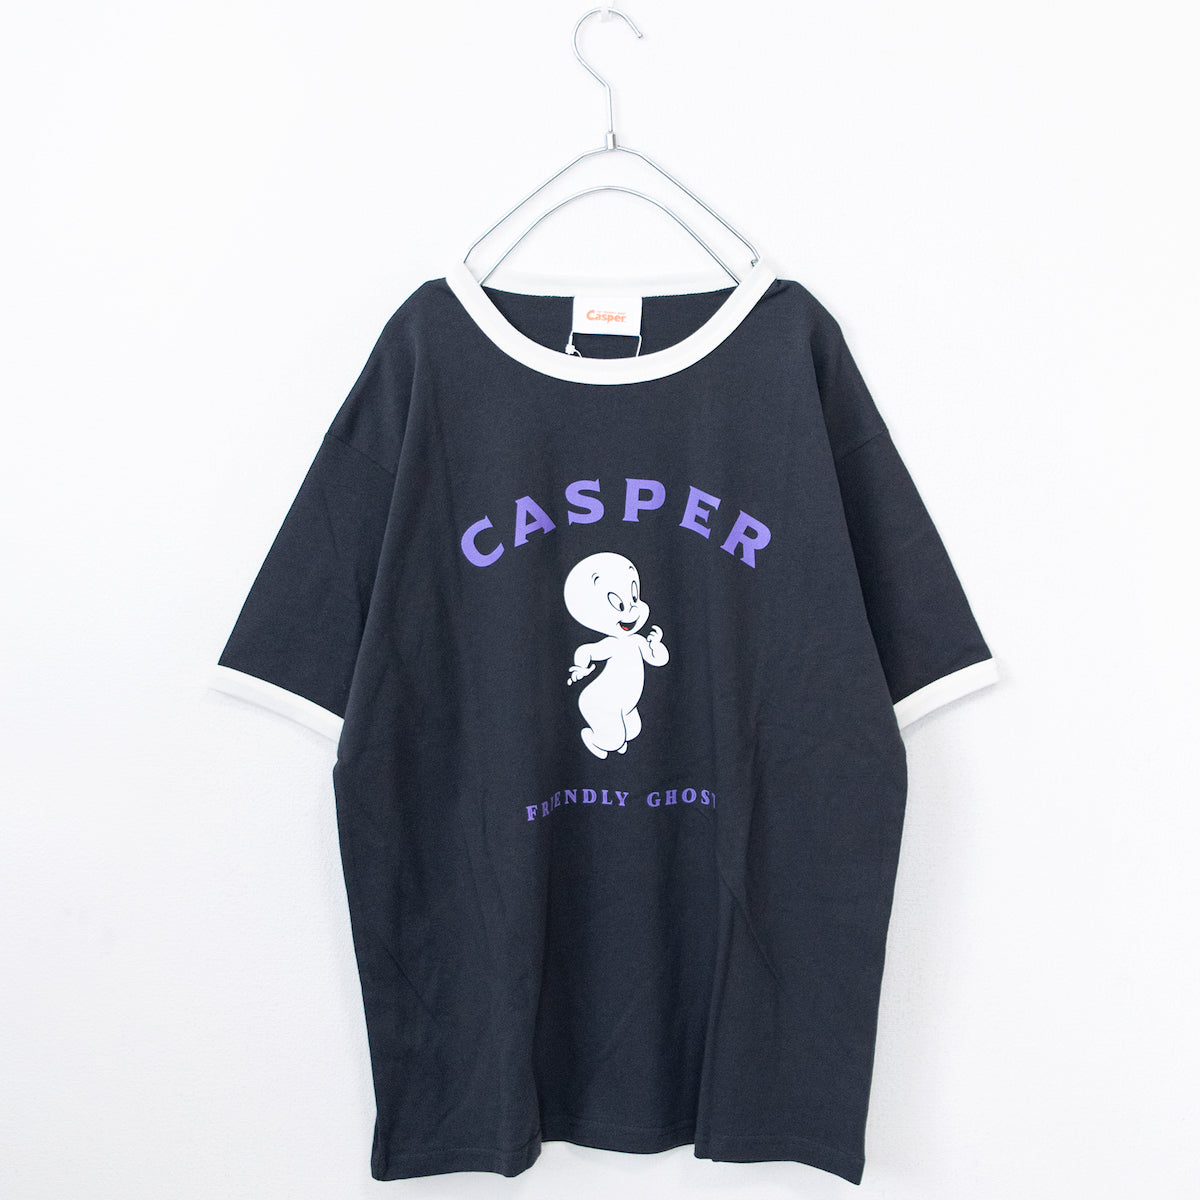 Casper Casper Ringer T-shirt - YOUAREMYPOISON